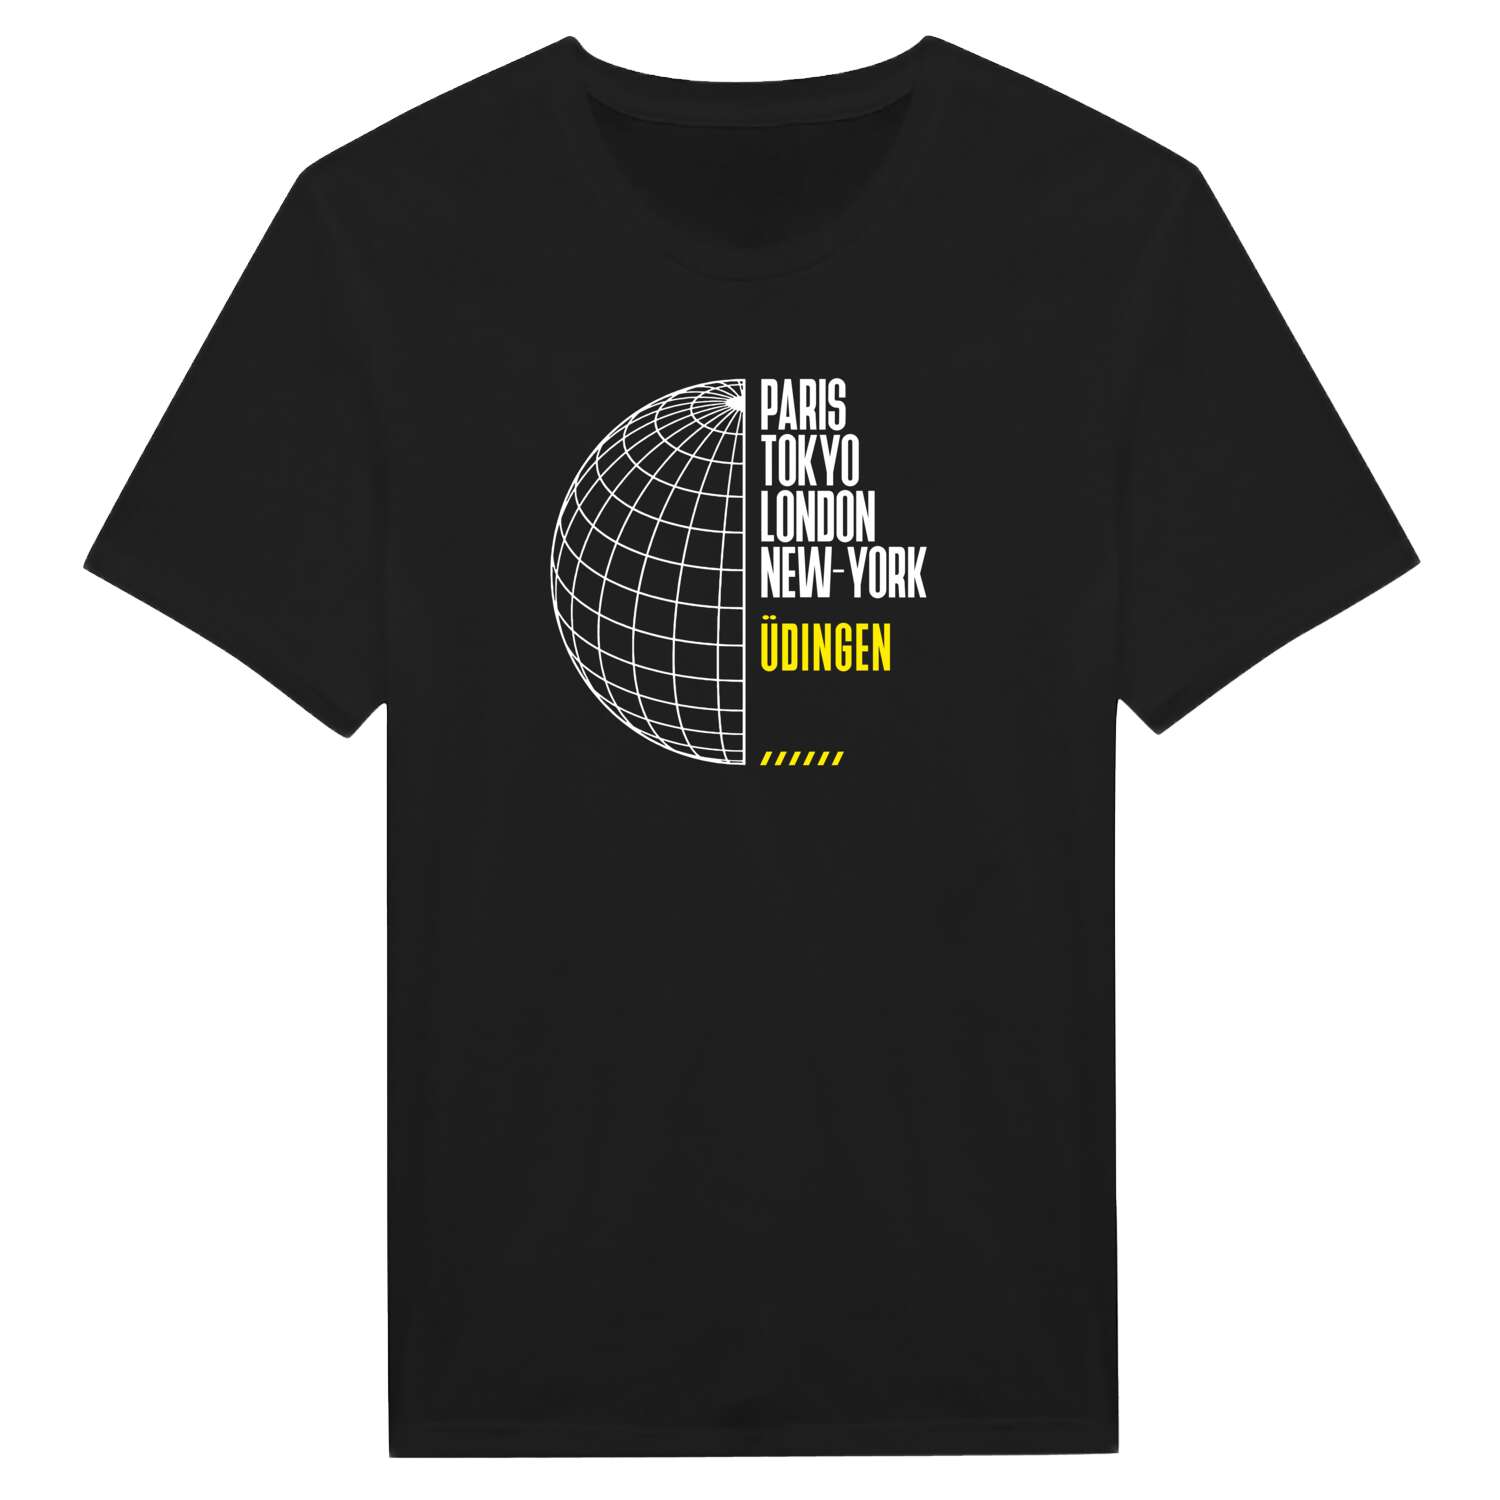 Üdingen T-Shirt »Paris Tokyo London«